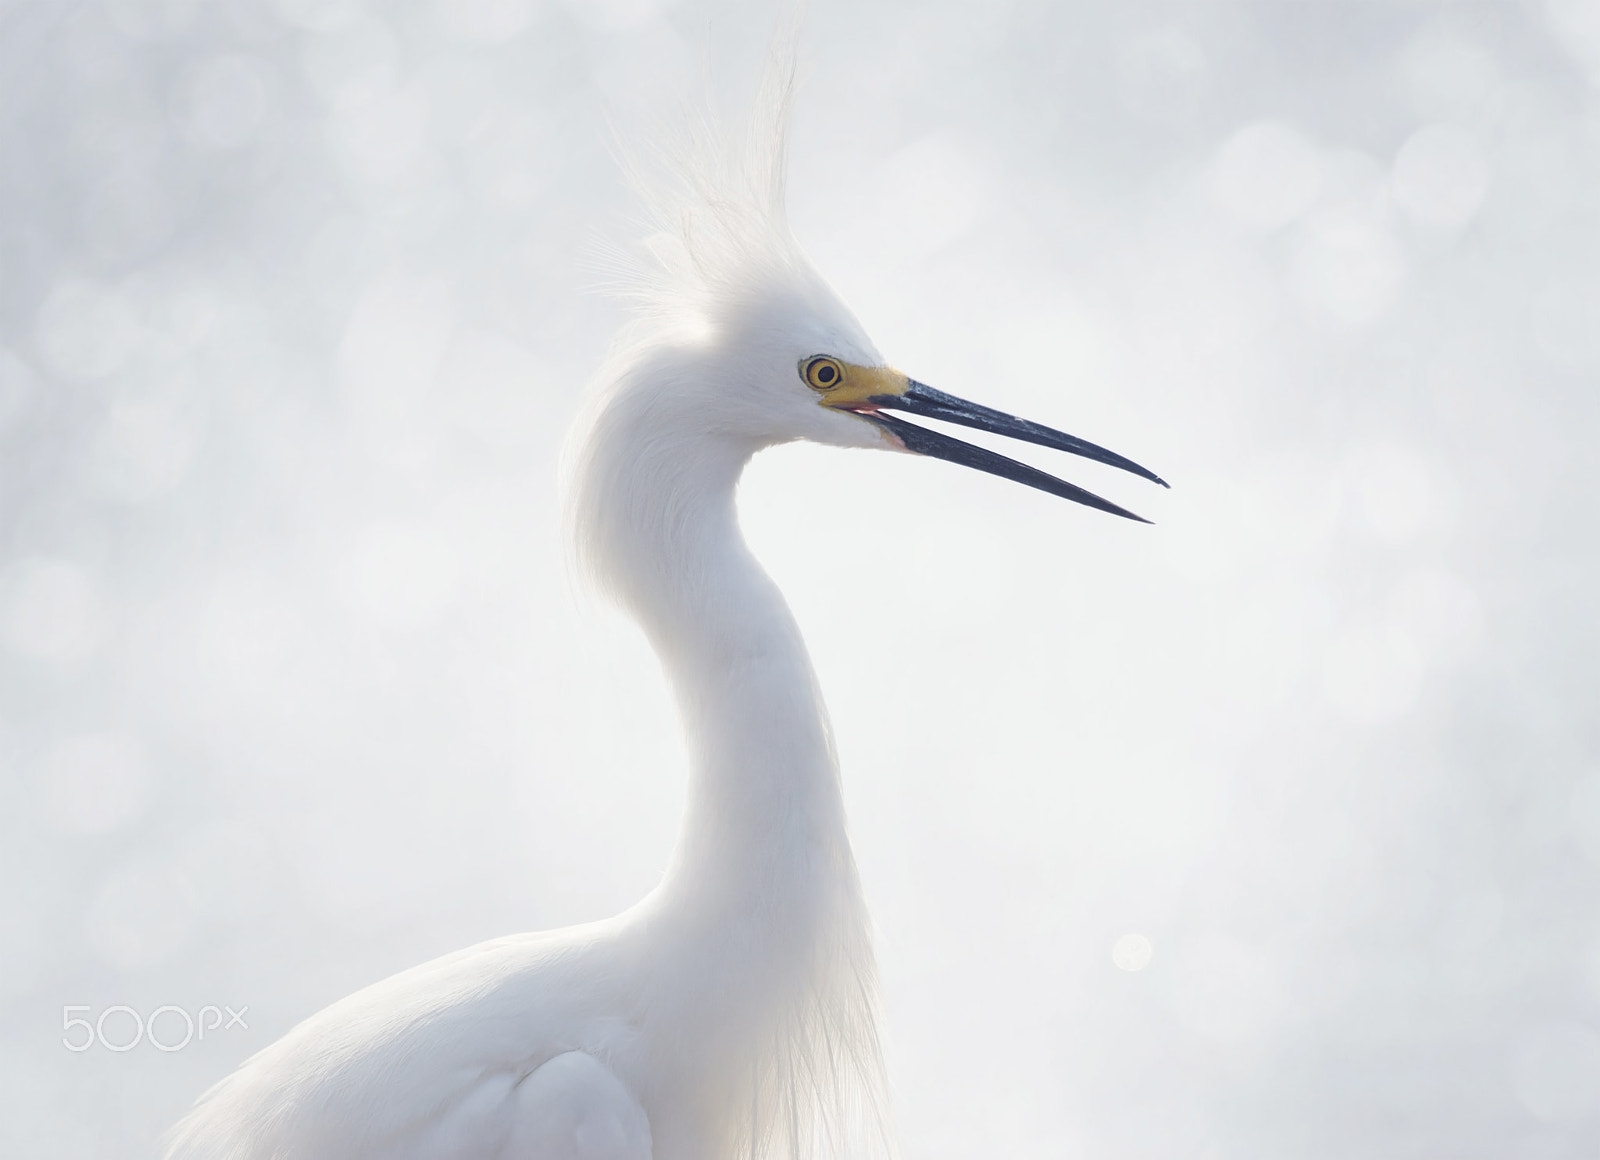 Nikon D800 sample photo. Snowy egret portrait photography